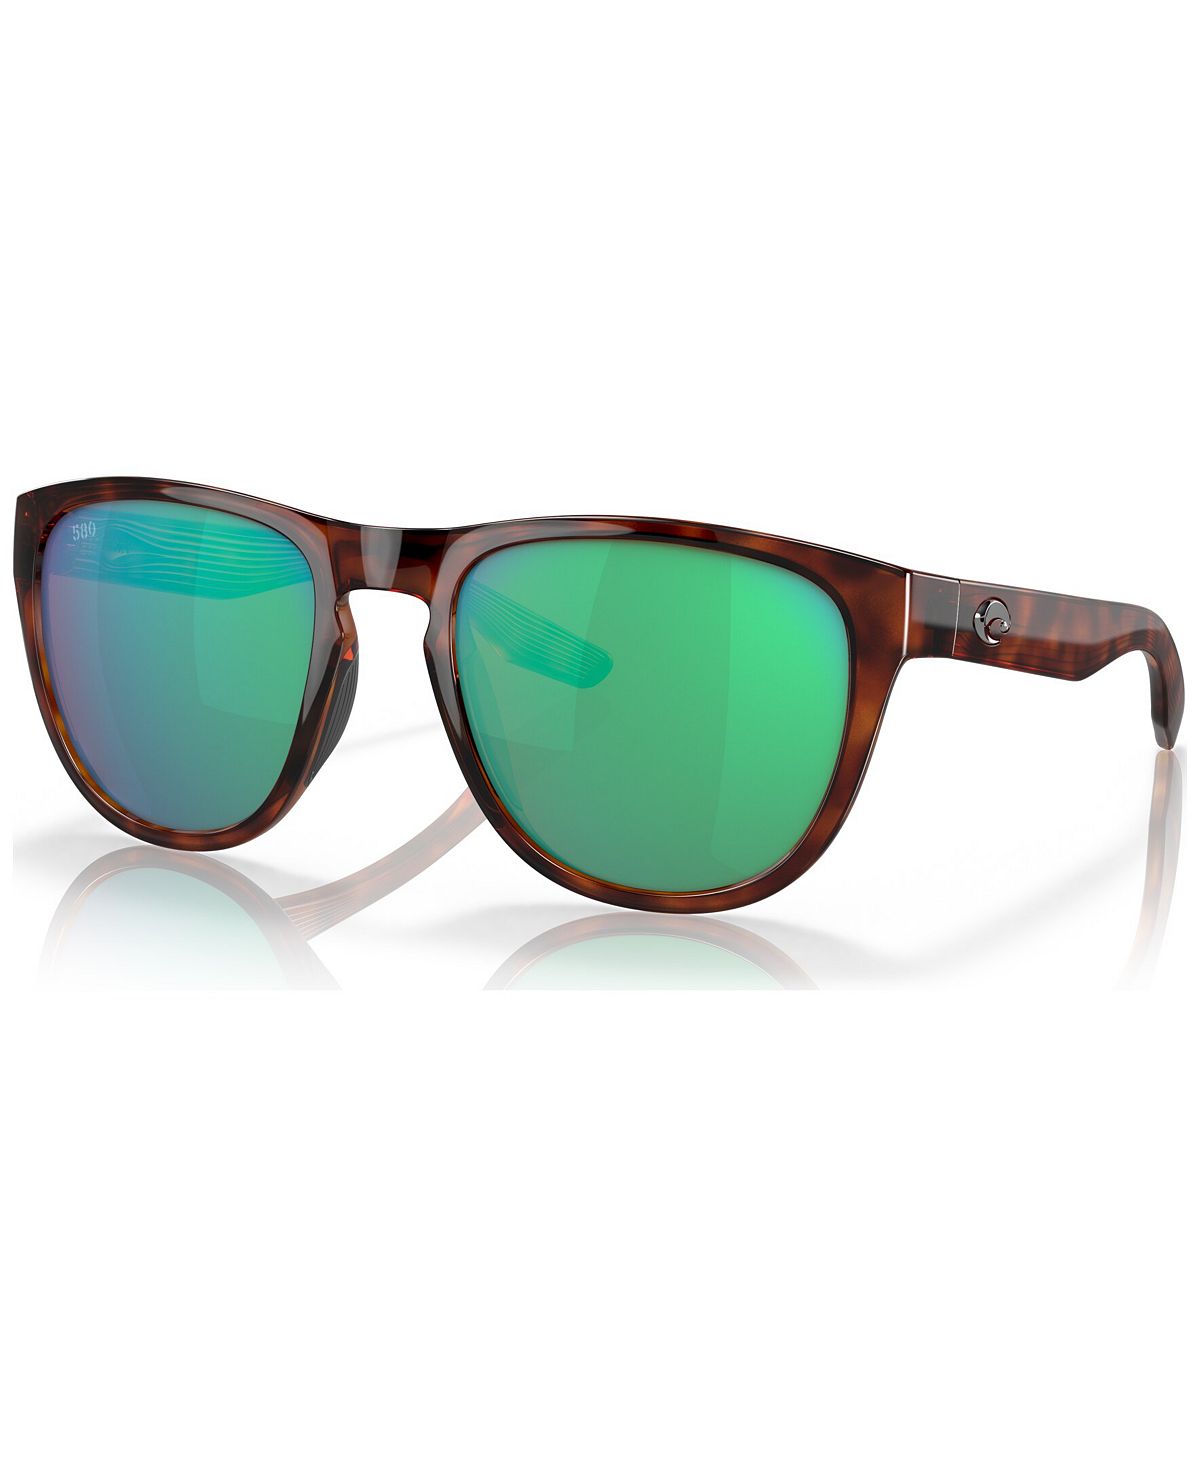 Поляризованные солнцезащитные очки унисекс, 6S908255-ZP Costa Del Mar